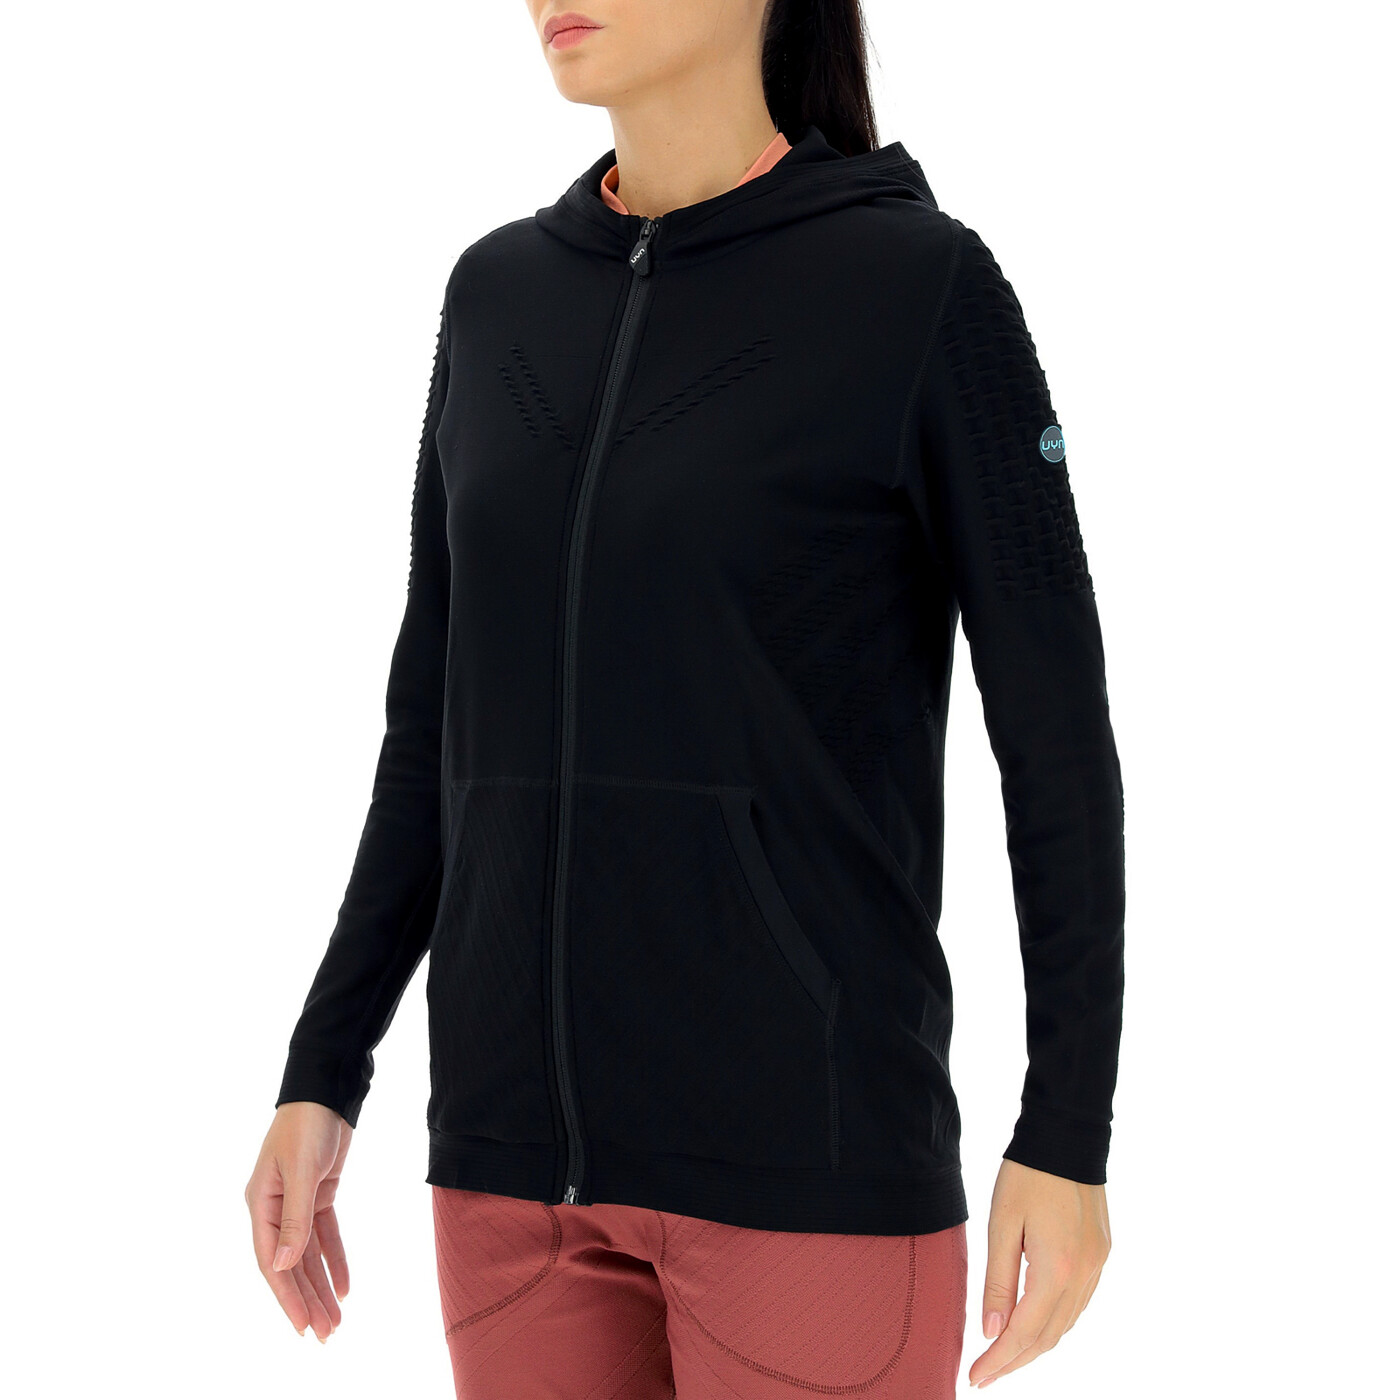 UYN Run Fit OW Hooded Full Zip Blackboard Women's Sweatshirt